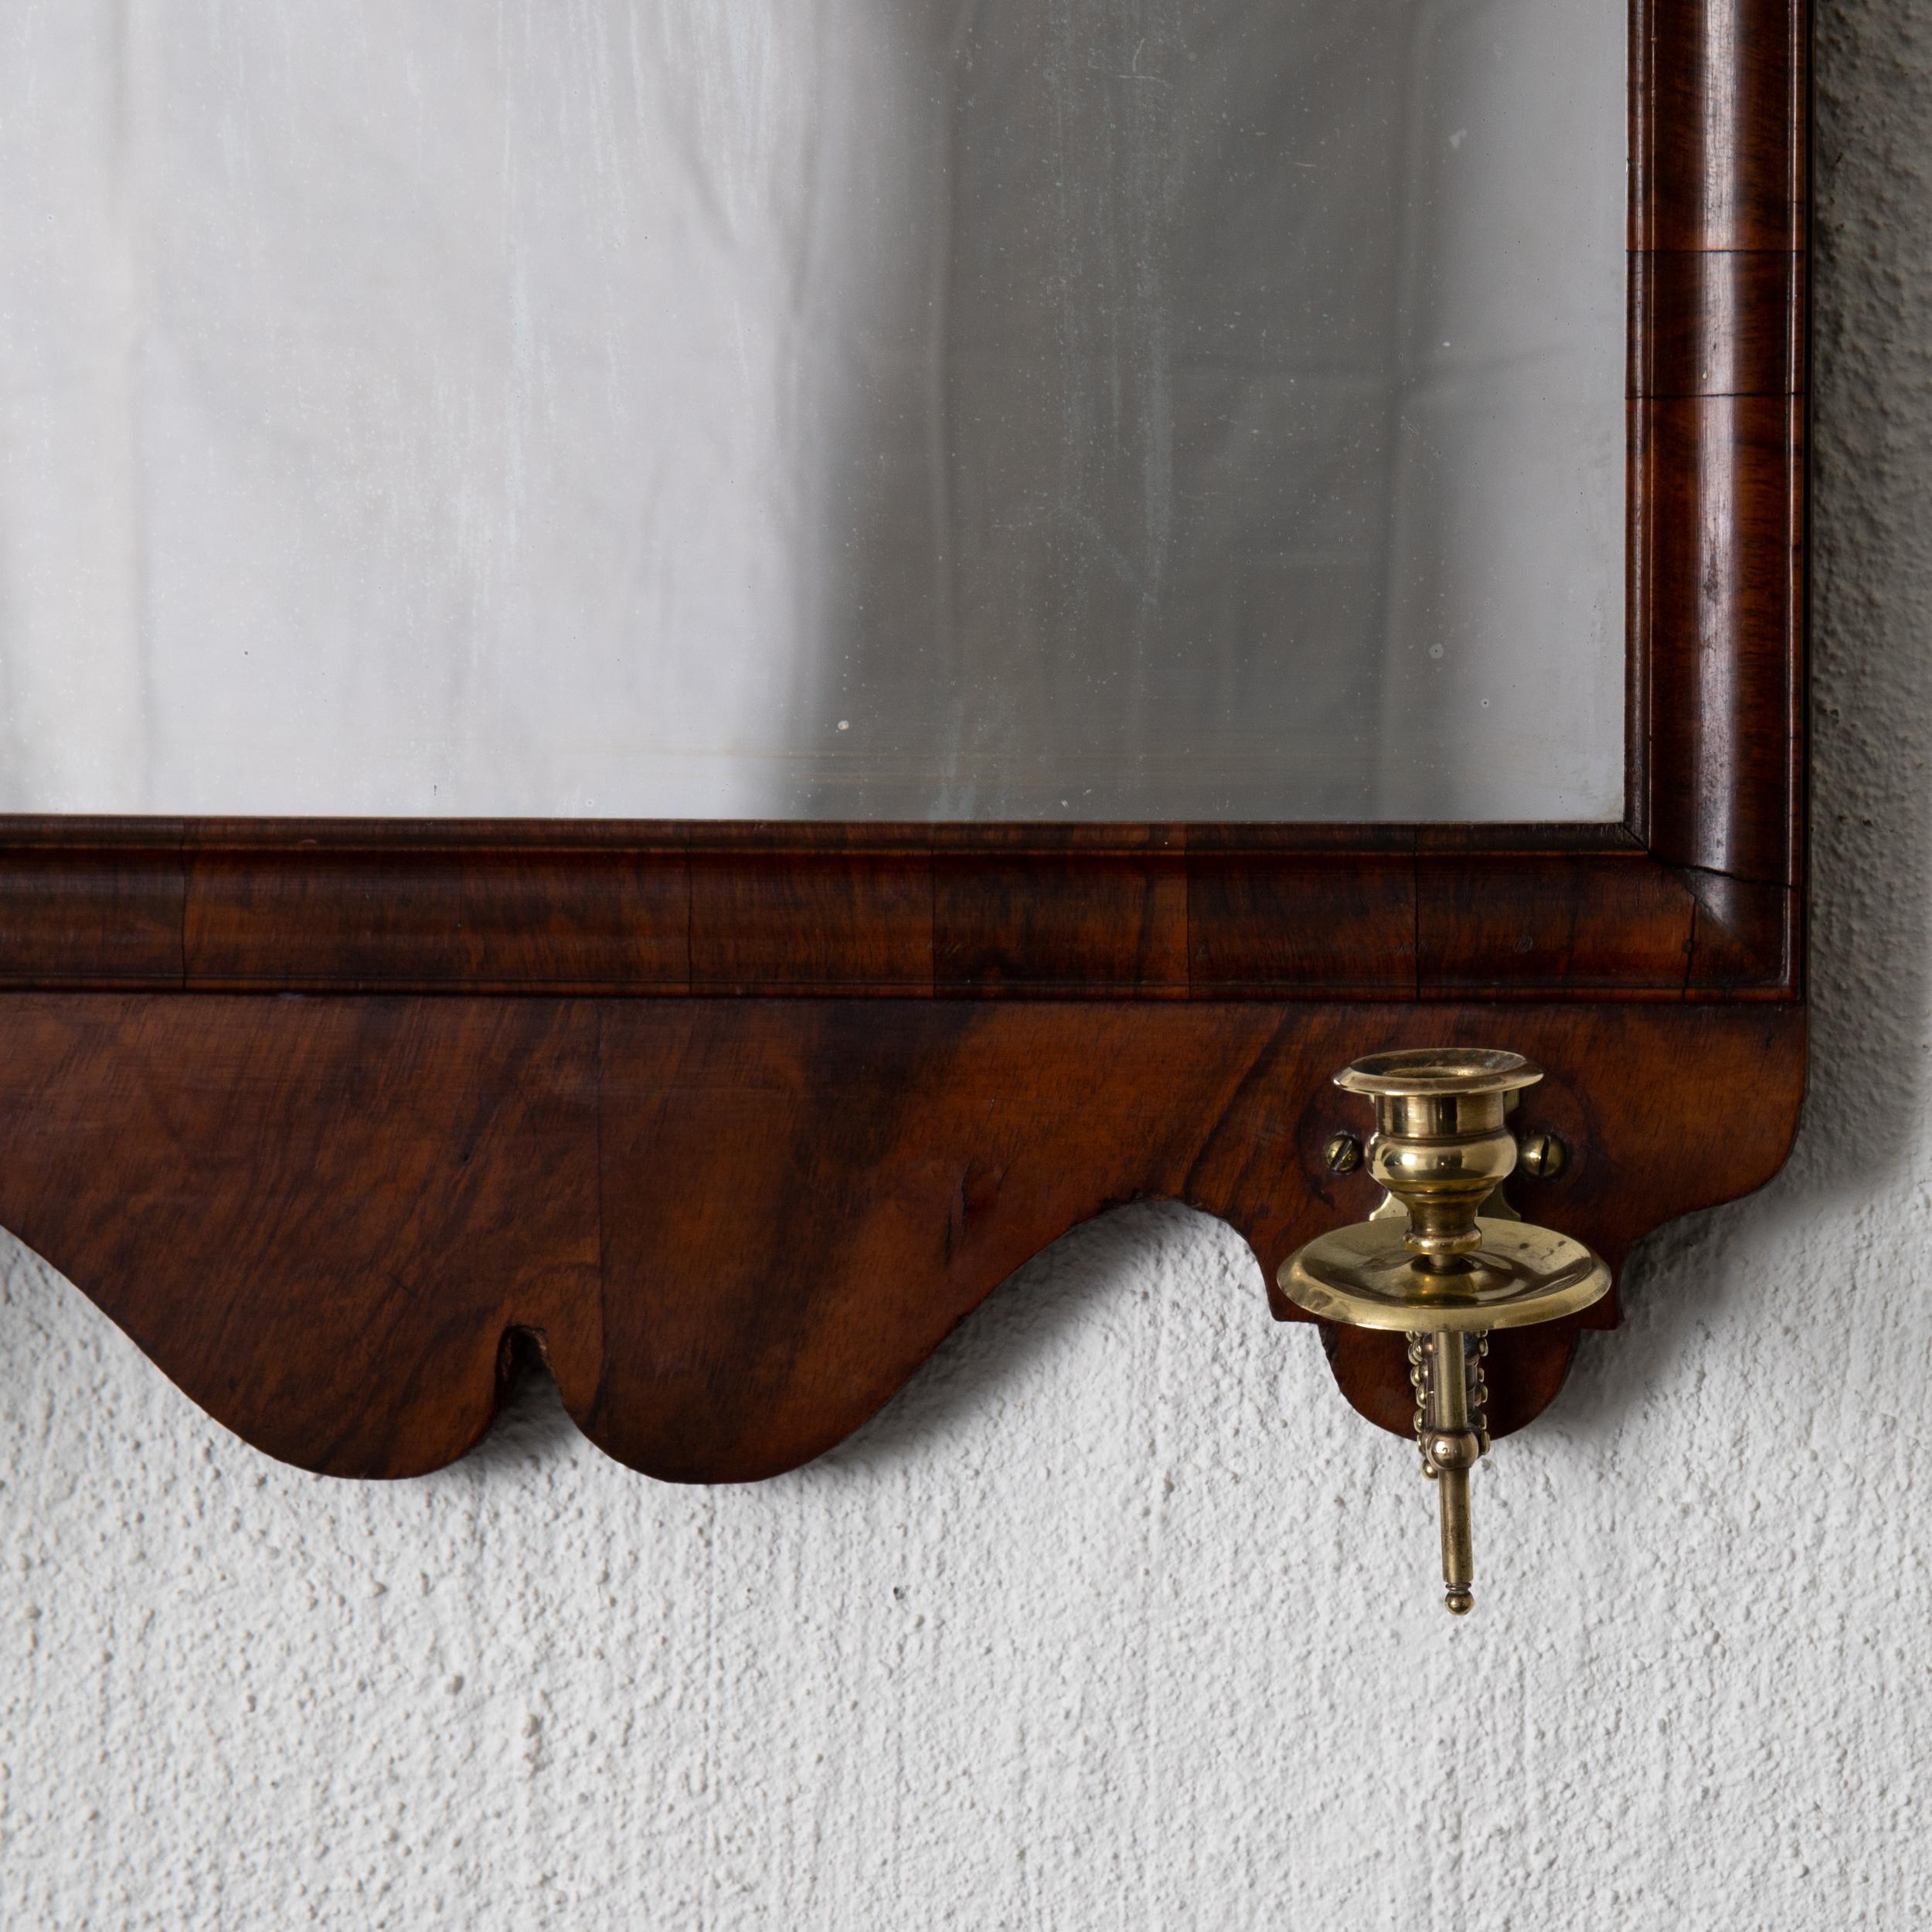 Miroir d'applique grand anglais 18ème siècle acajou 2 chandeliers Angleterre. Cadre en acajou brun foncé. Deux chandeliers extensibles en laiton.